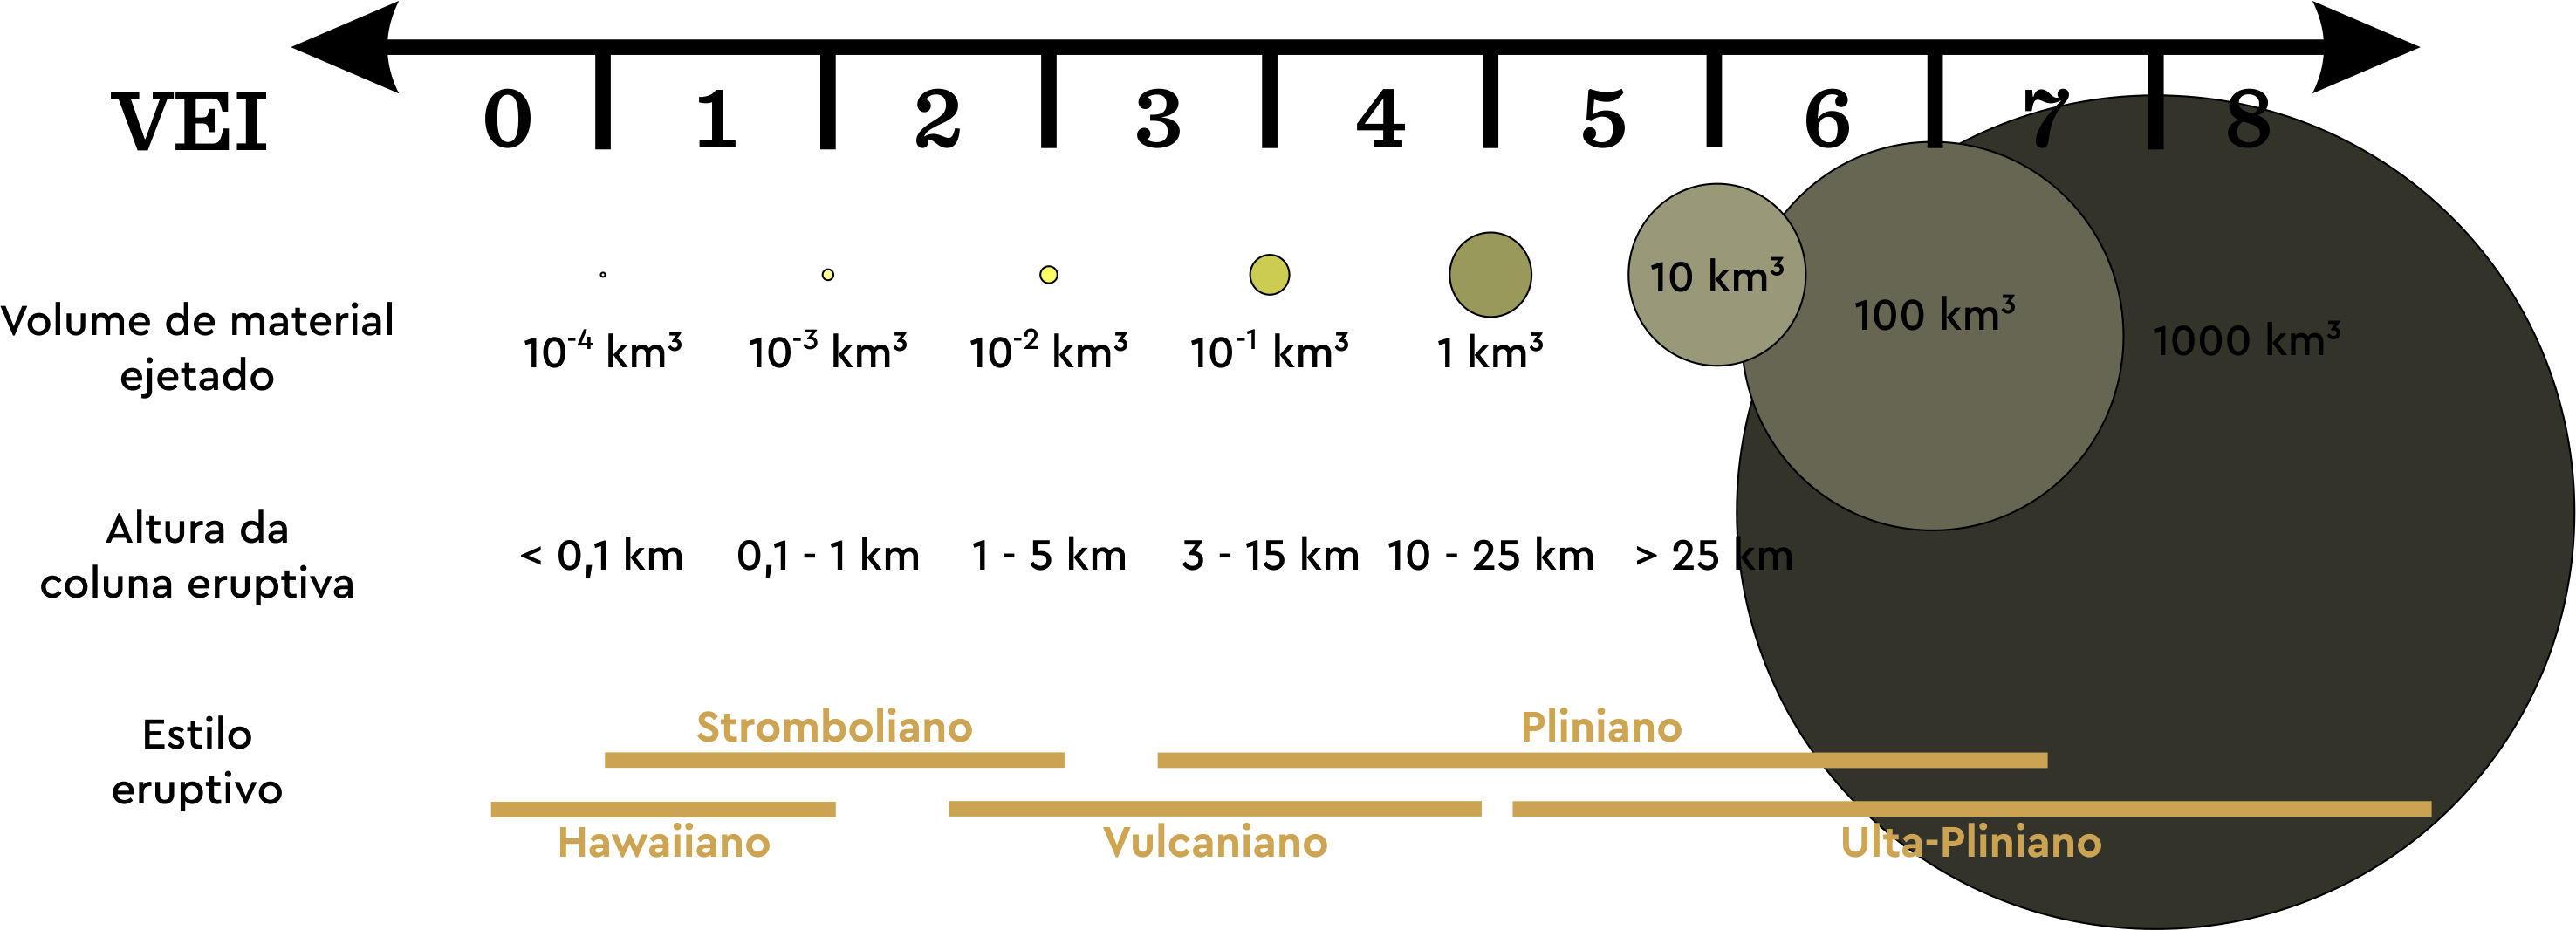 Índice de Explosividade Vulcânica (VEI), escala numérica mede a explosividade relativa das erupções vulcânicas. Volume de material expelido, altura da coluna eruptiva e descrições qualitativas (por exemplo “erupção suave”, “erupção colossal”, etc.) são usados como critério de classificação. A escala não tem limite superior, embora o maior valor (VEI=8) seja definido com base nas maiores erupções conhecidas no planeta. VEI 0 corresponde à erupções efusivas ou de baixa explosividade, com volume de material ejetado inferior a 10.000 m³, enquanto que VEI 8 representa erupções mega-colossais, com volume de material ejetado superior a 1.000 km³ e colunas eruptivas mais altas que 25 km. A escala é logarítmica, ou seja, cada intervalo da escala representa um aumento de 10 vezes no volume de material ejetado (com exceção dos intervalos entre VEI 0, 1 e 2).